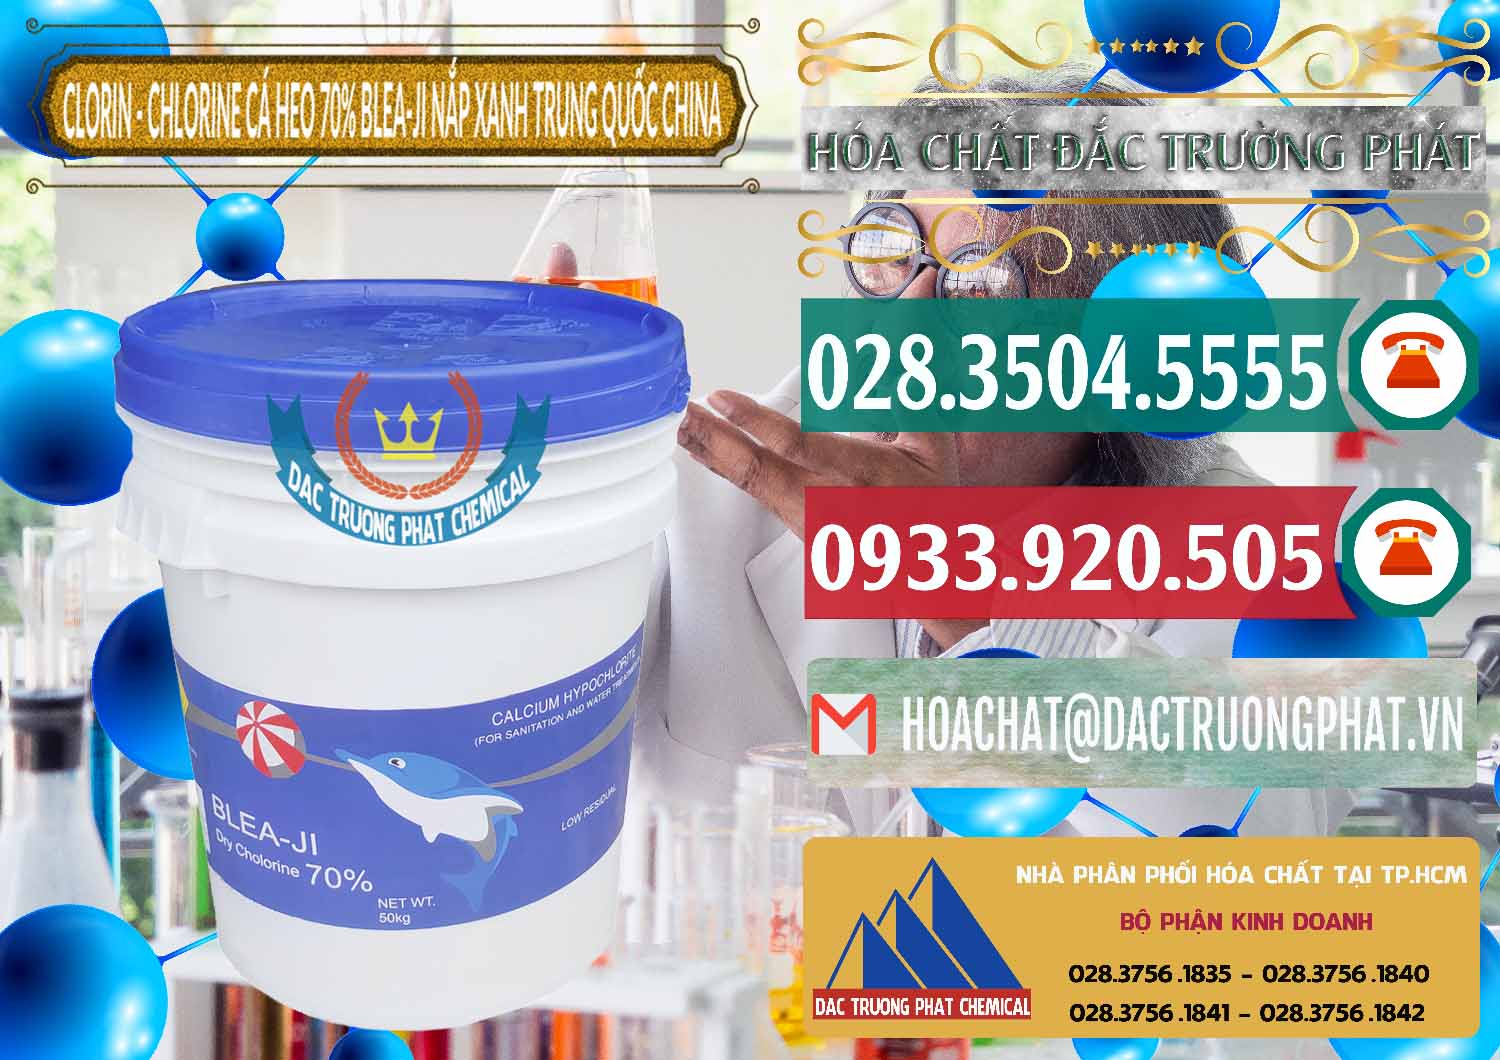 Đơn vị chuyên nhập khẩu ( bán ) Clorin - Chlorine Cá Heo 70% Cá Heo Blea-Ji Thùng Tròn Nắp Xanh Trung Quốc China - 0208 - Cty chuyên kinh doanh - cung cấp hóa chất tại TP.HCM - muabanhoachat.vn